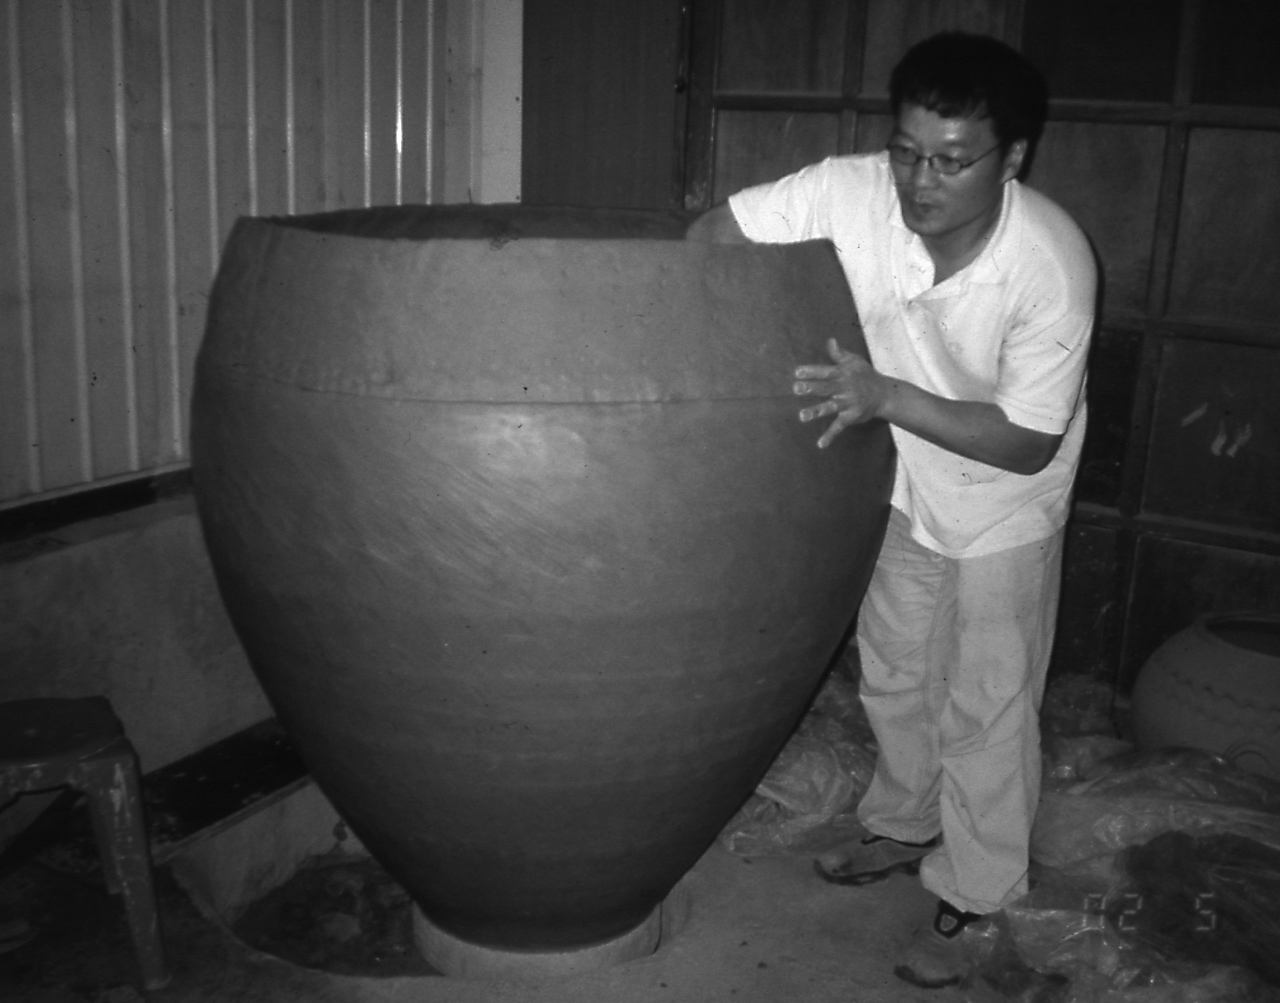 Korean Clay w/Lid Pottery Pot Jar ONGGI Hangari for Fermenting